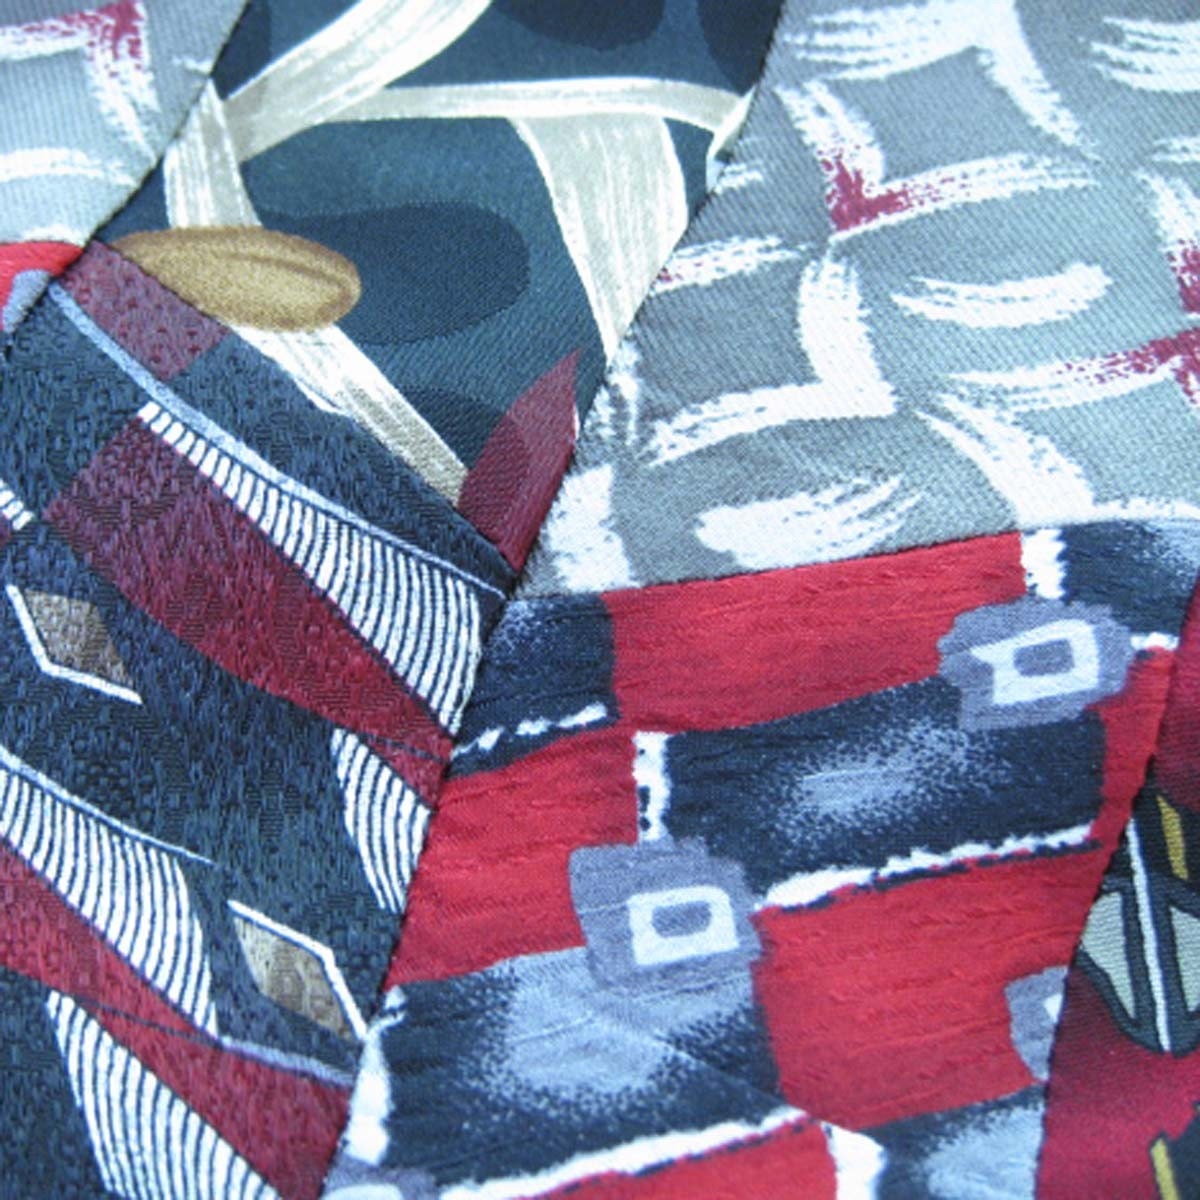 2009 scarf pattern CROCHET